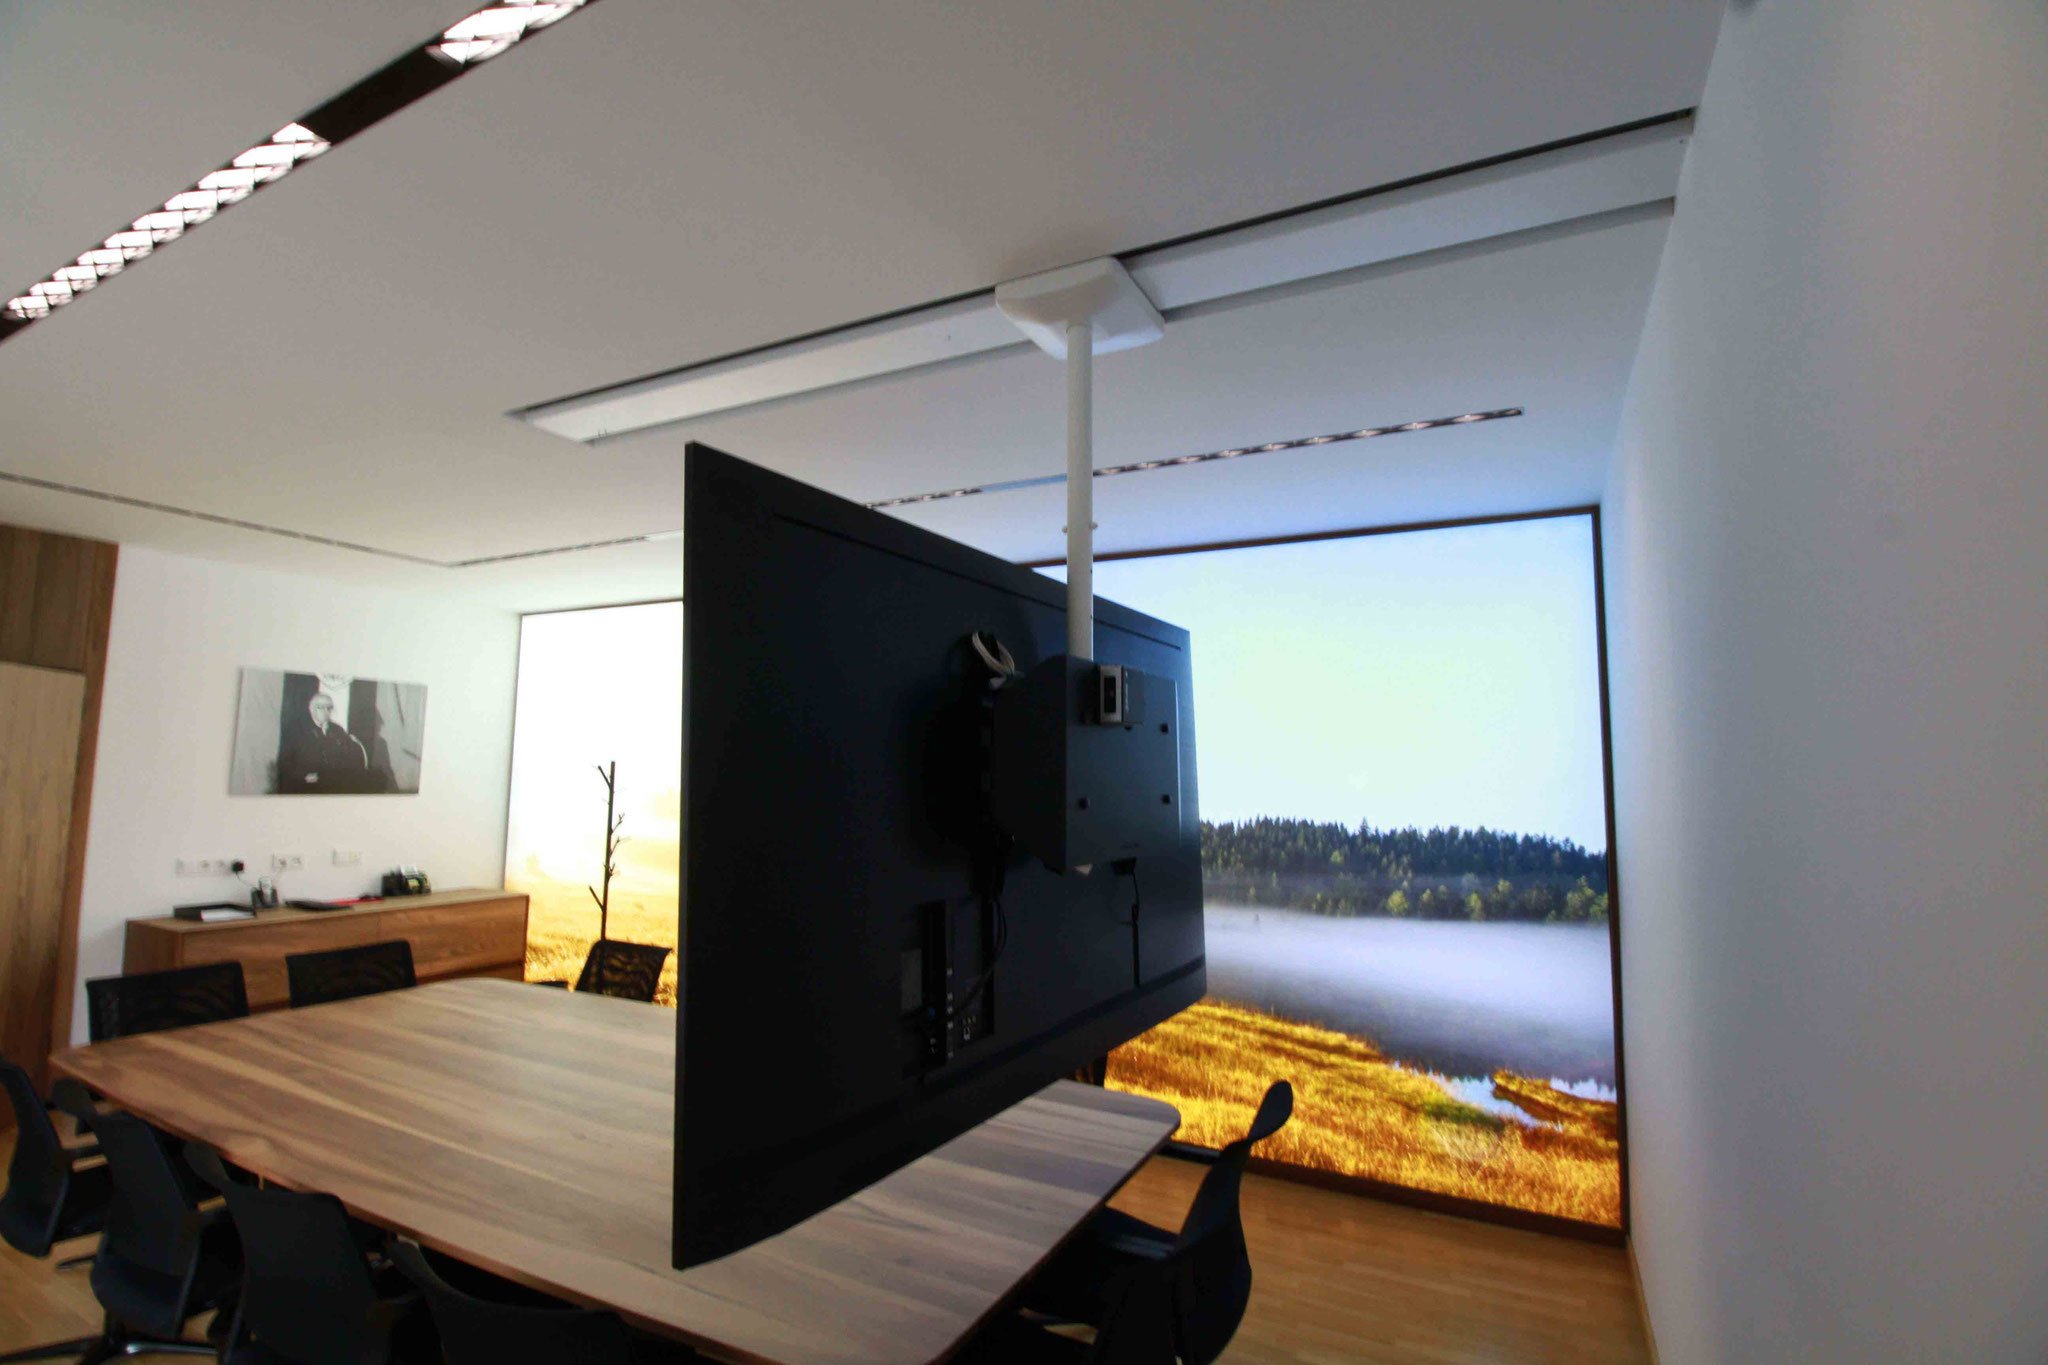 Supporto da soffitto per TV girevole a 360 gradi, regolabile in altezza,  inclinabile e scorrevole - ScreenTrain supporto TV scorrevole a soffitto